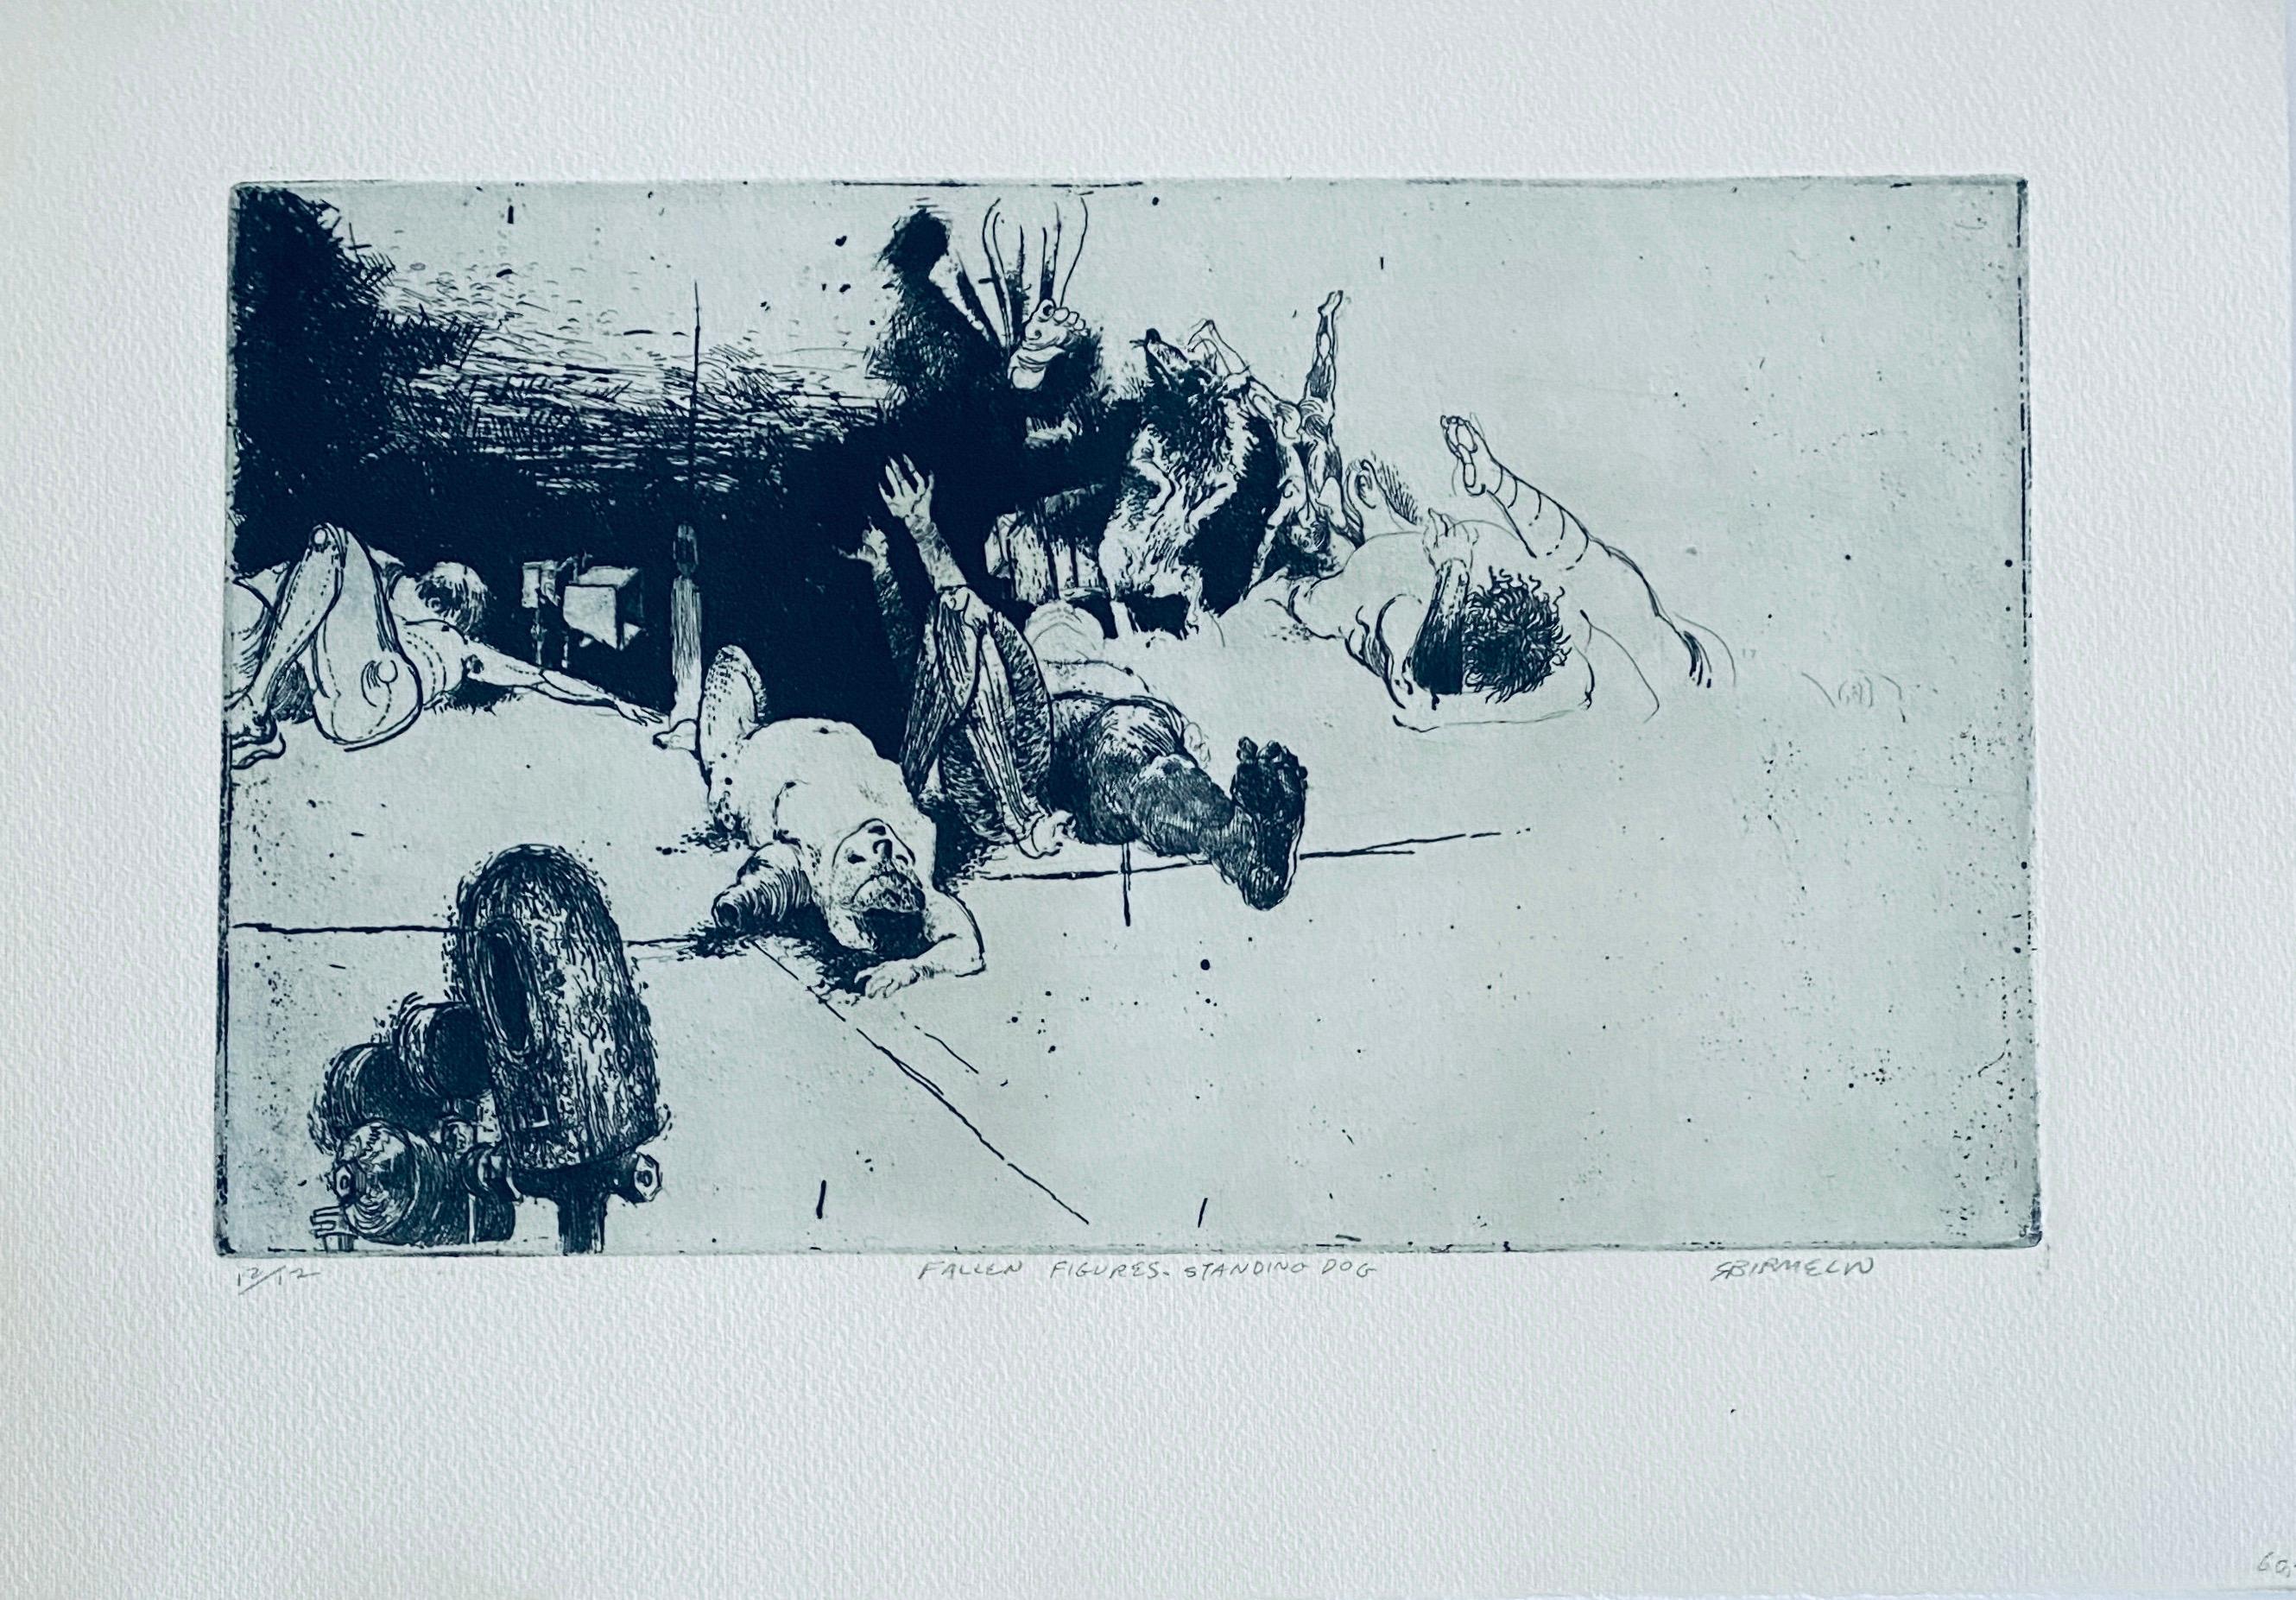 Robert A. Birmelin Interior Print - Fallen Figures. Standing Dog, American Modernist Abstract Etching